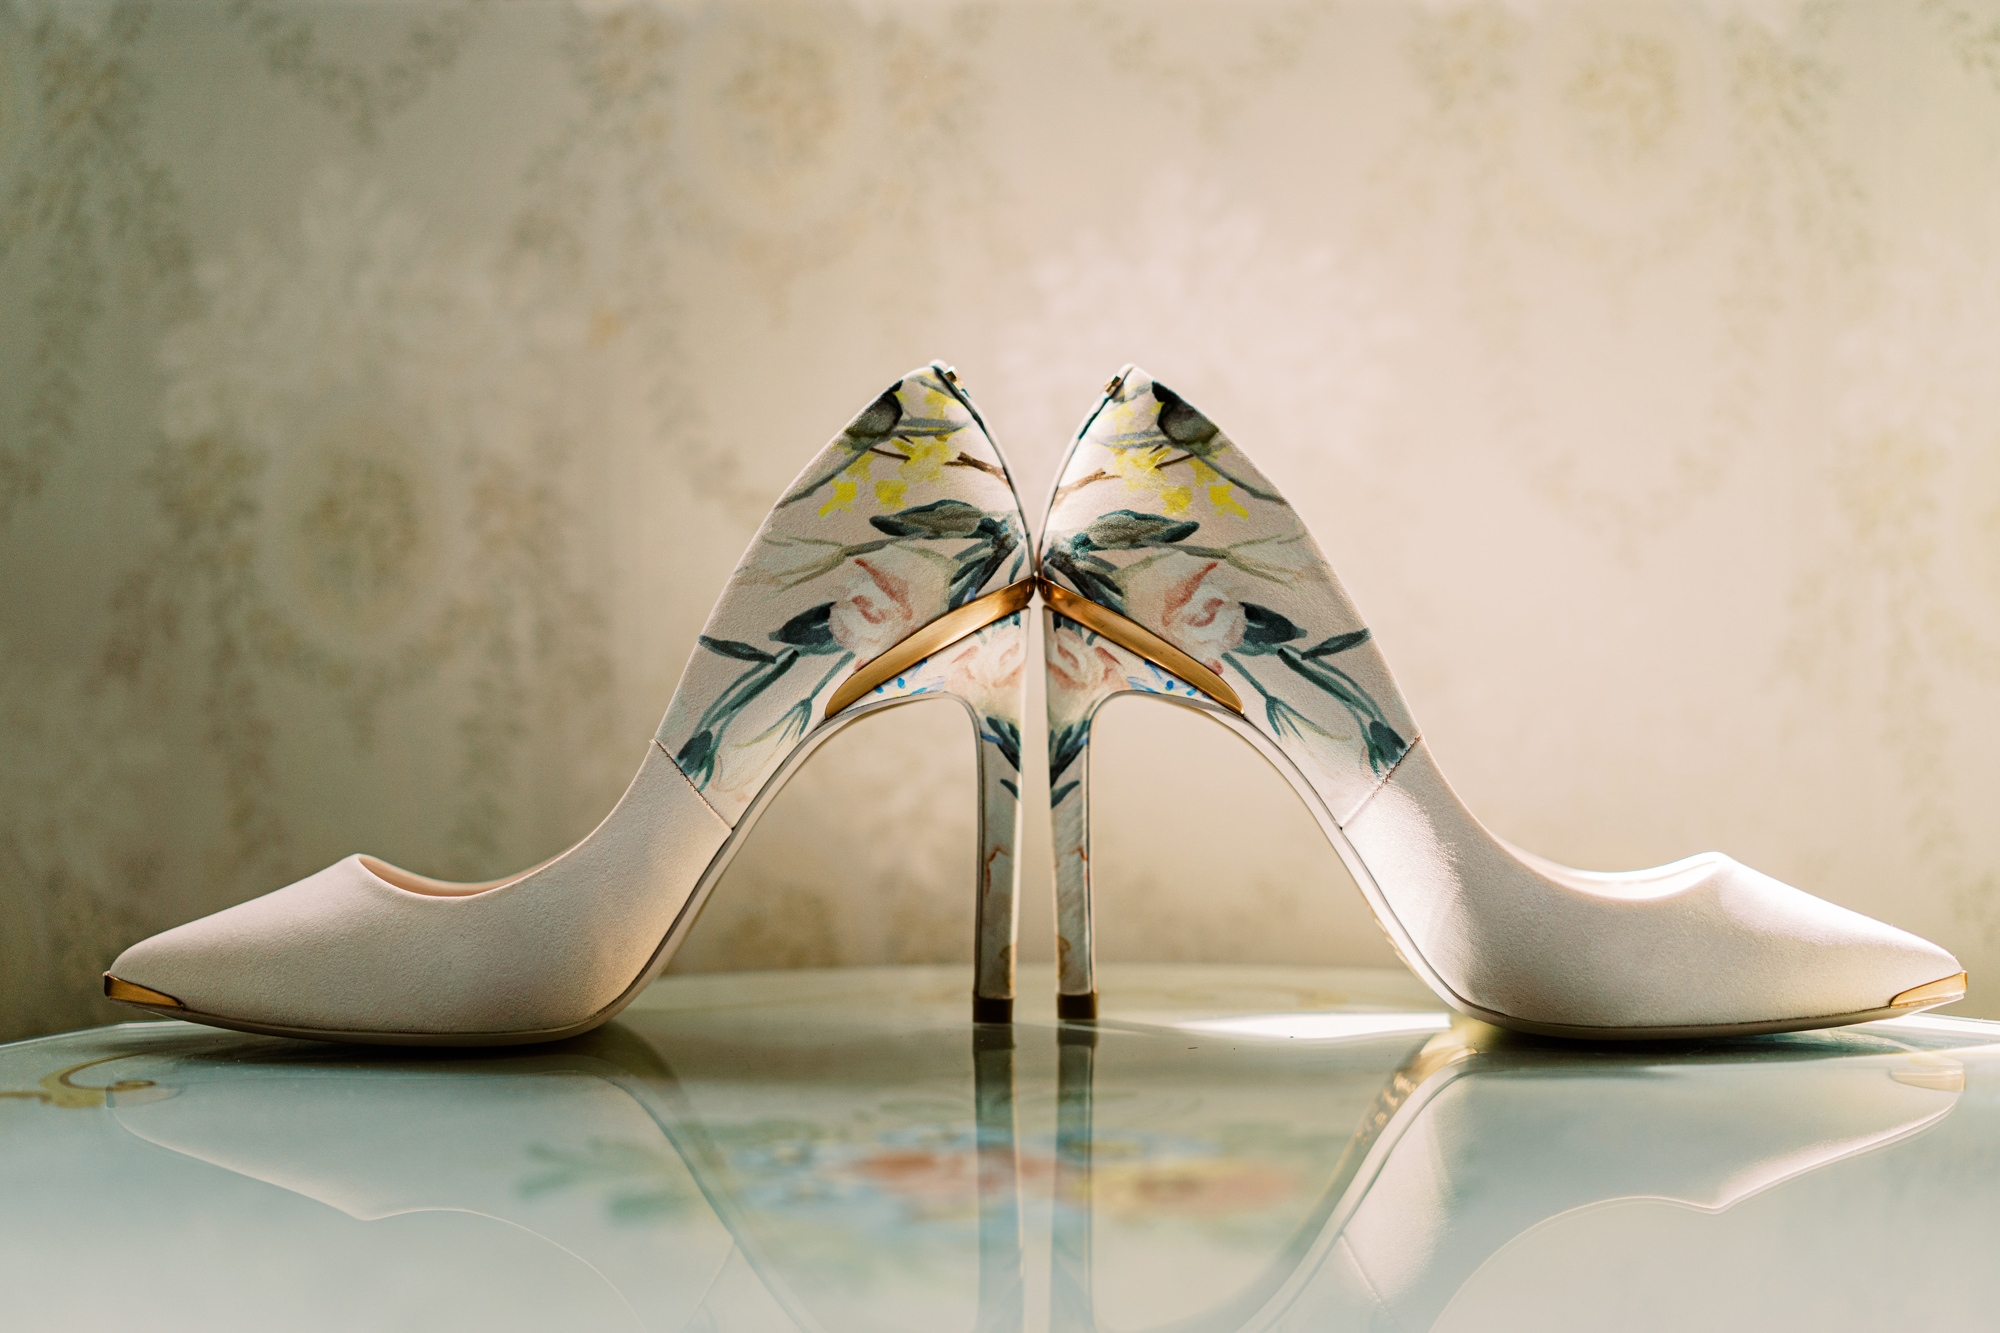 Nadira's exquisite Ted Baker wedding heels